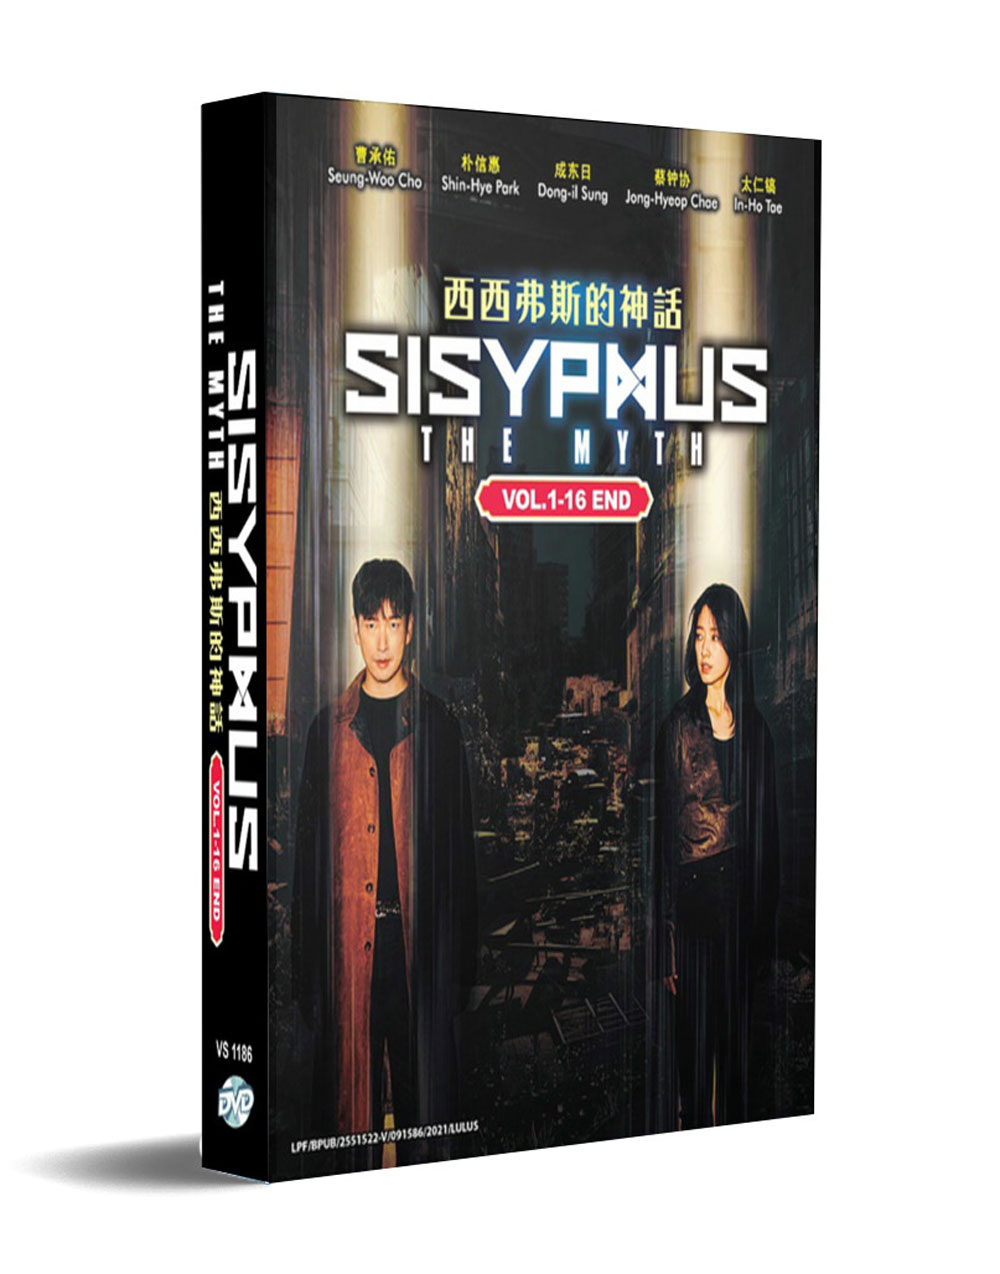 Sisyphus: The Myth (DVD) (2021) Korean TV Series